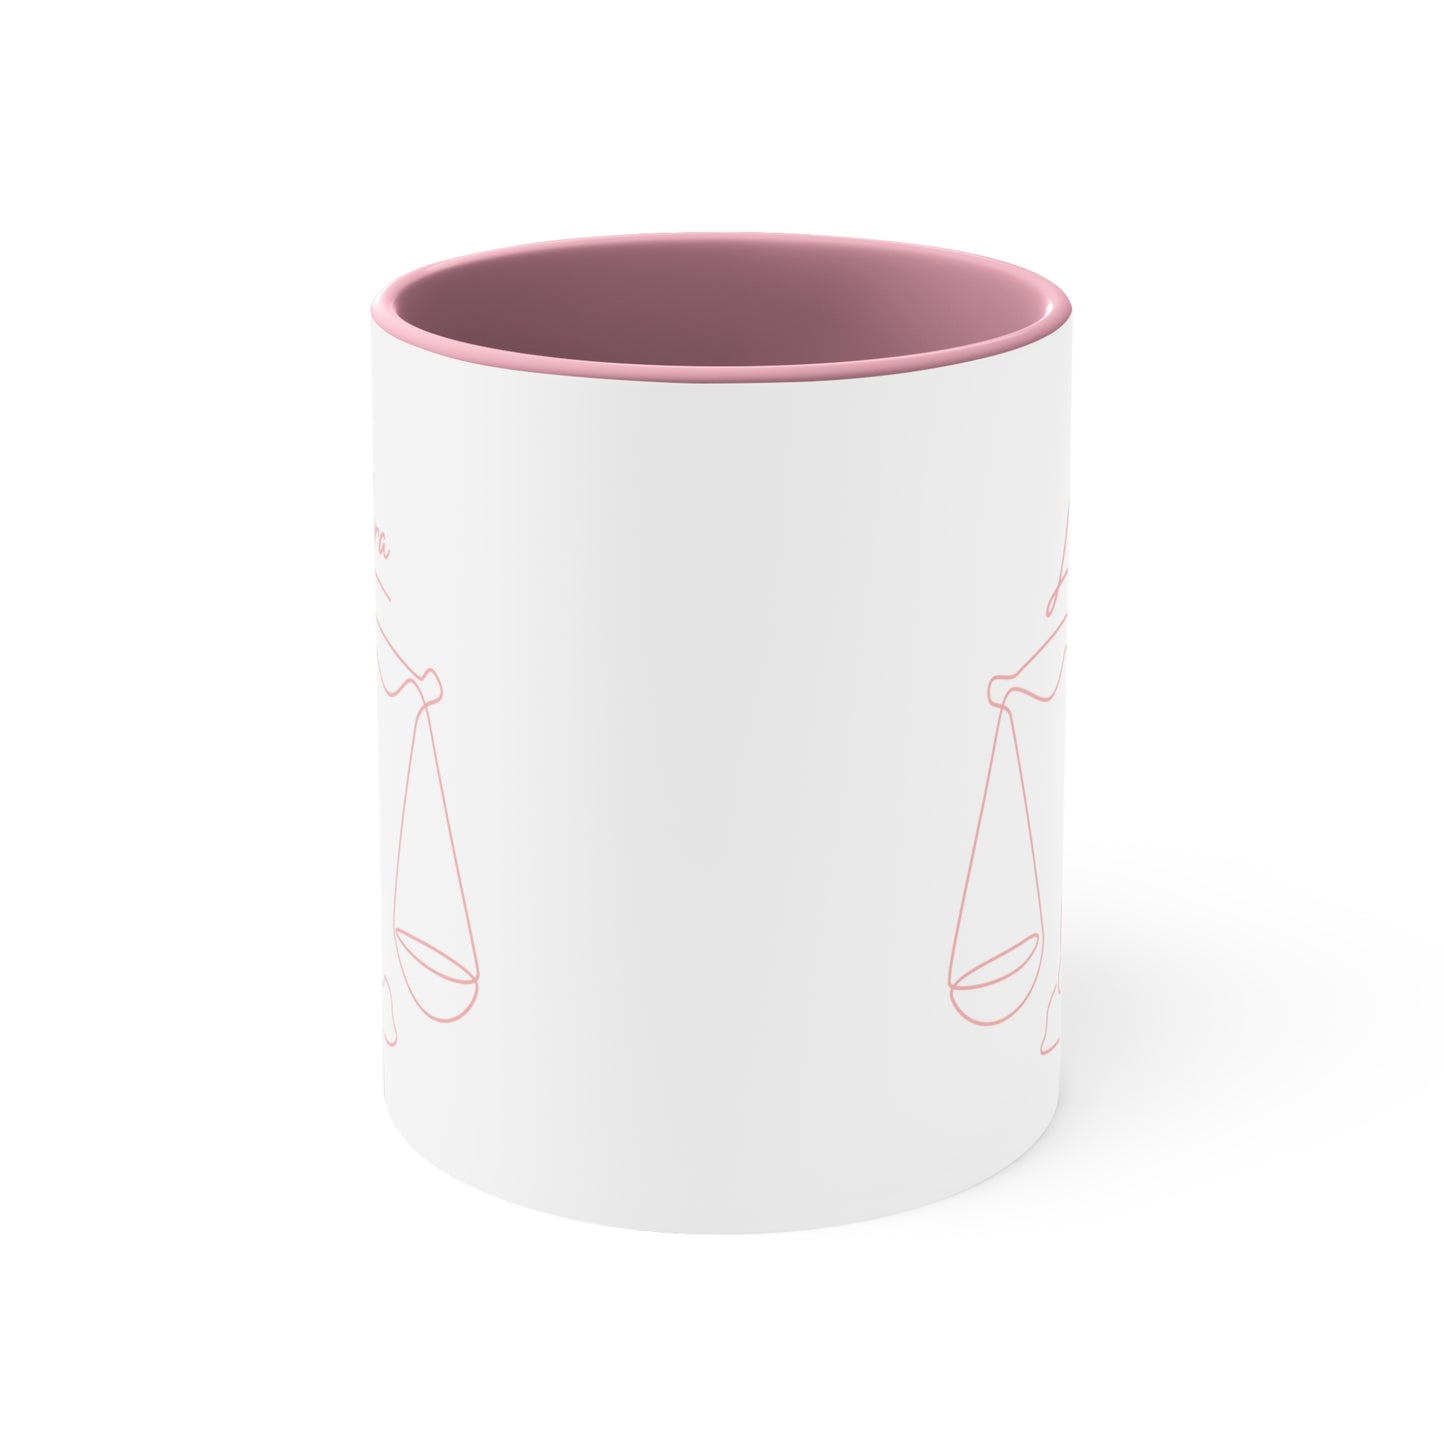 Abstract Libra coffee mug